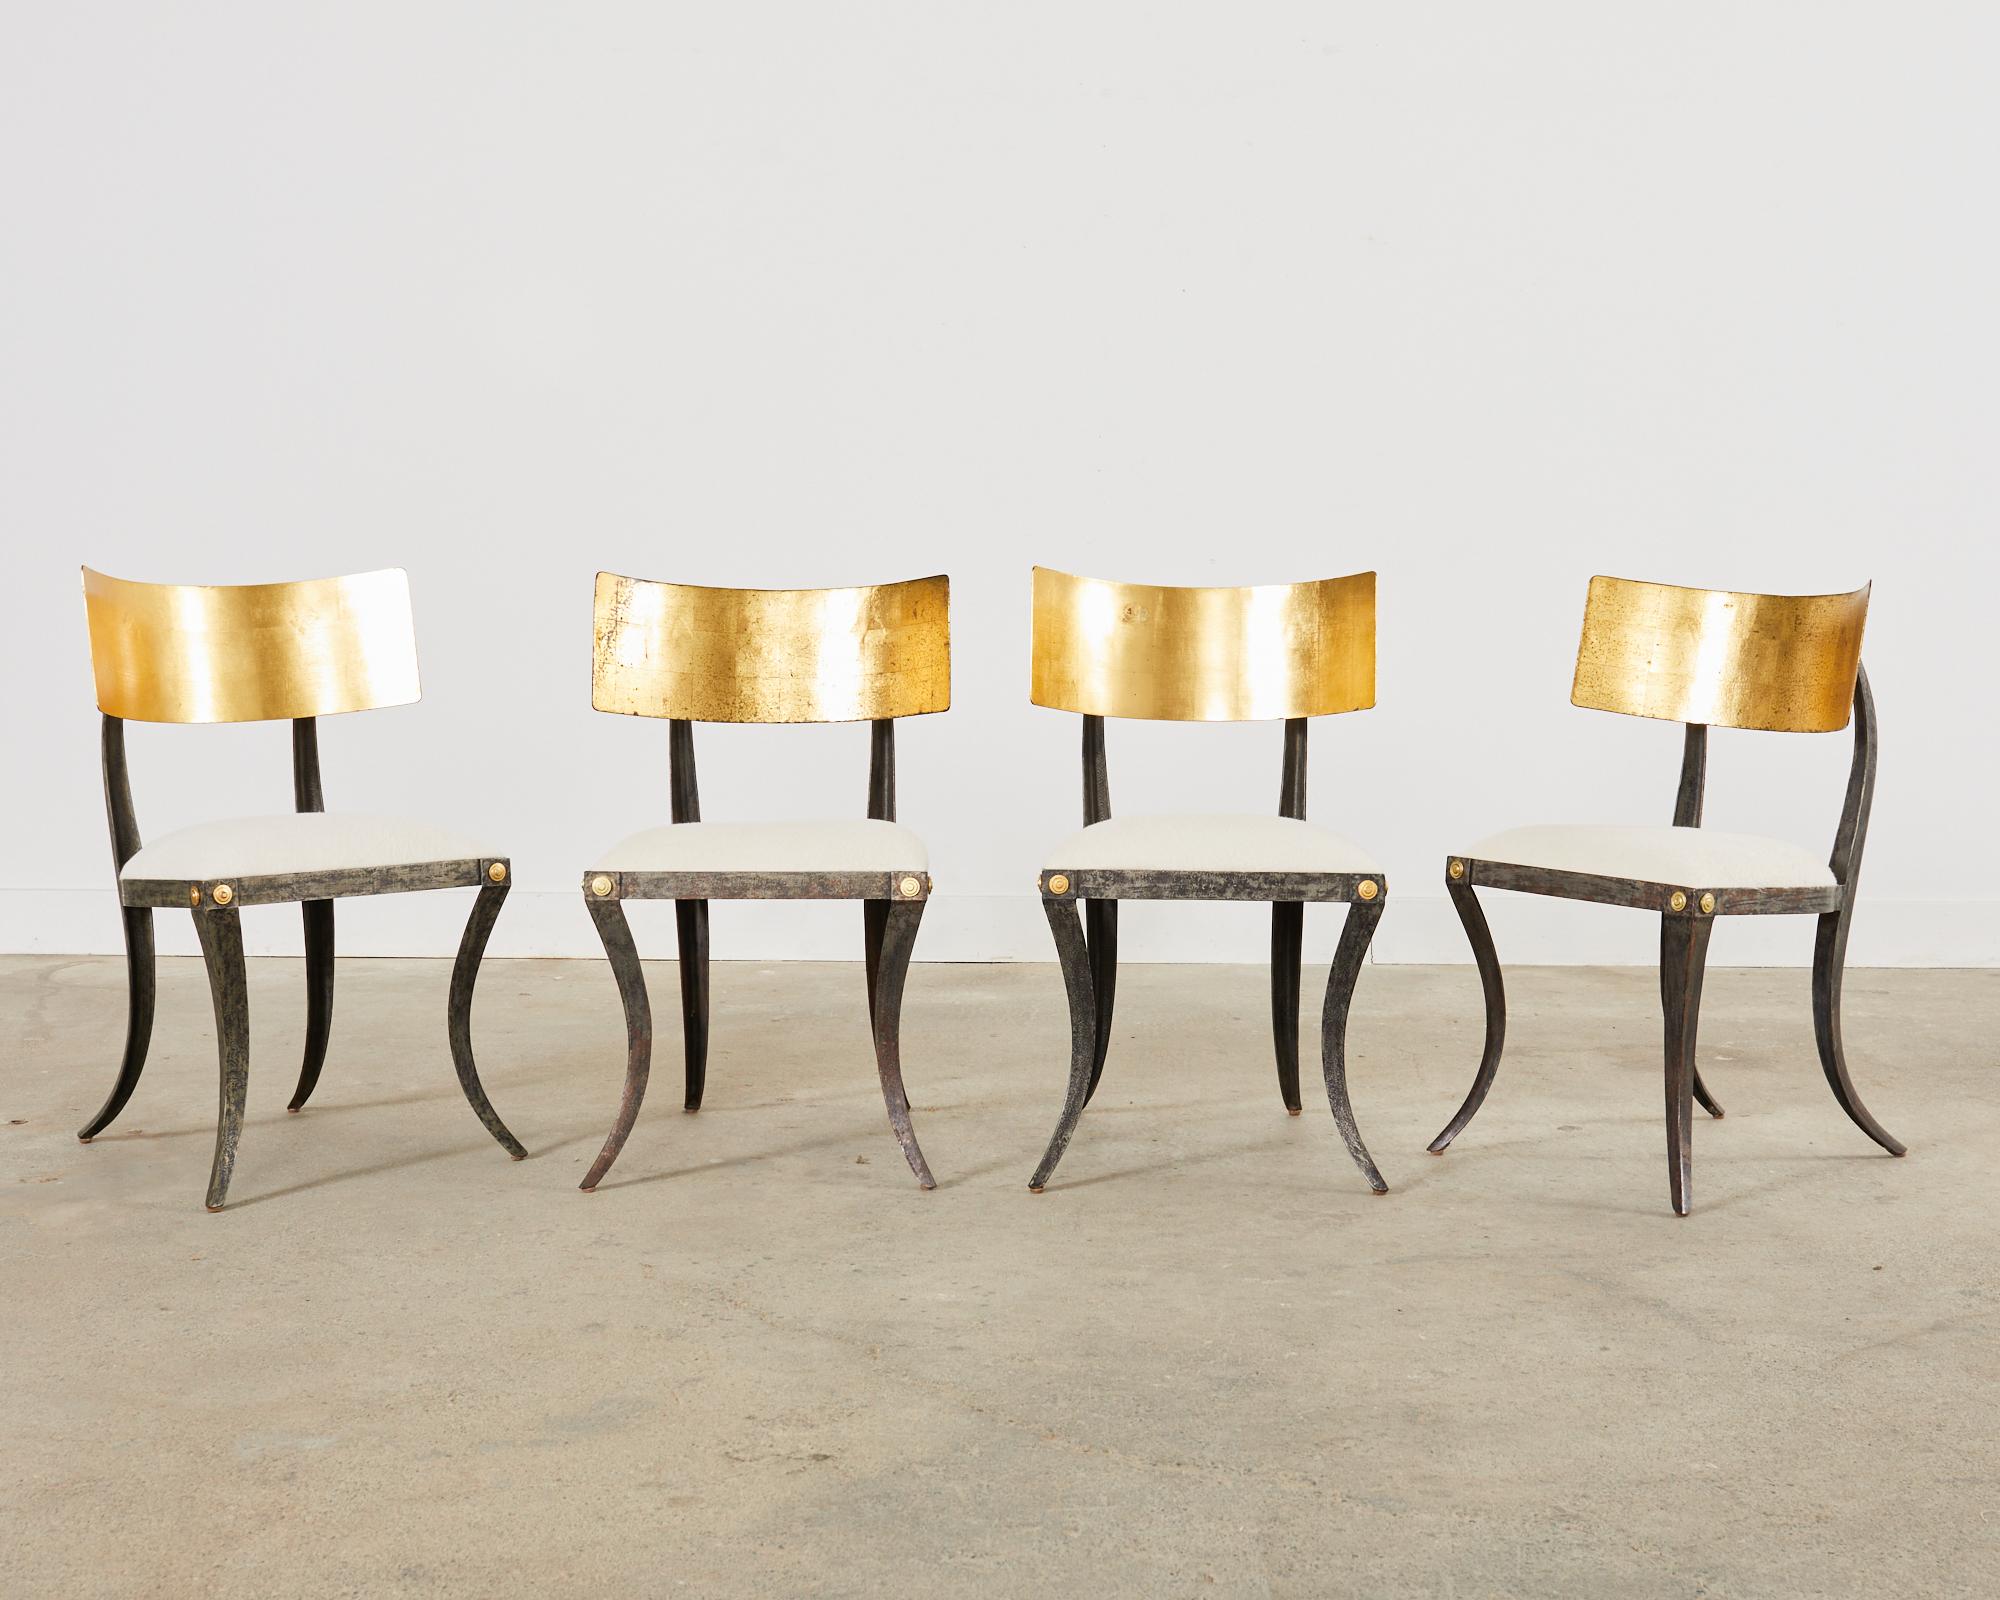 Satz von vier vergoldeten Klismos-Stühlen aus Eisen von Ched Berenguer-Topacio (Handgefertigt)